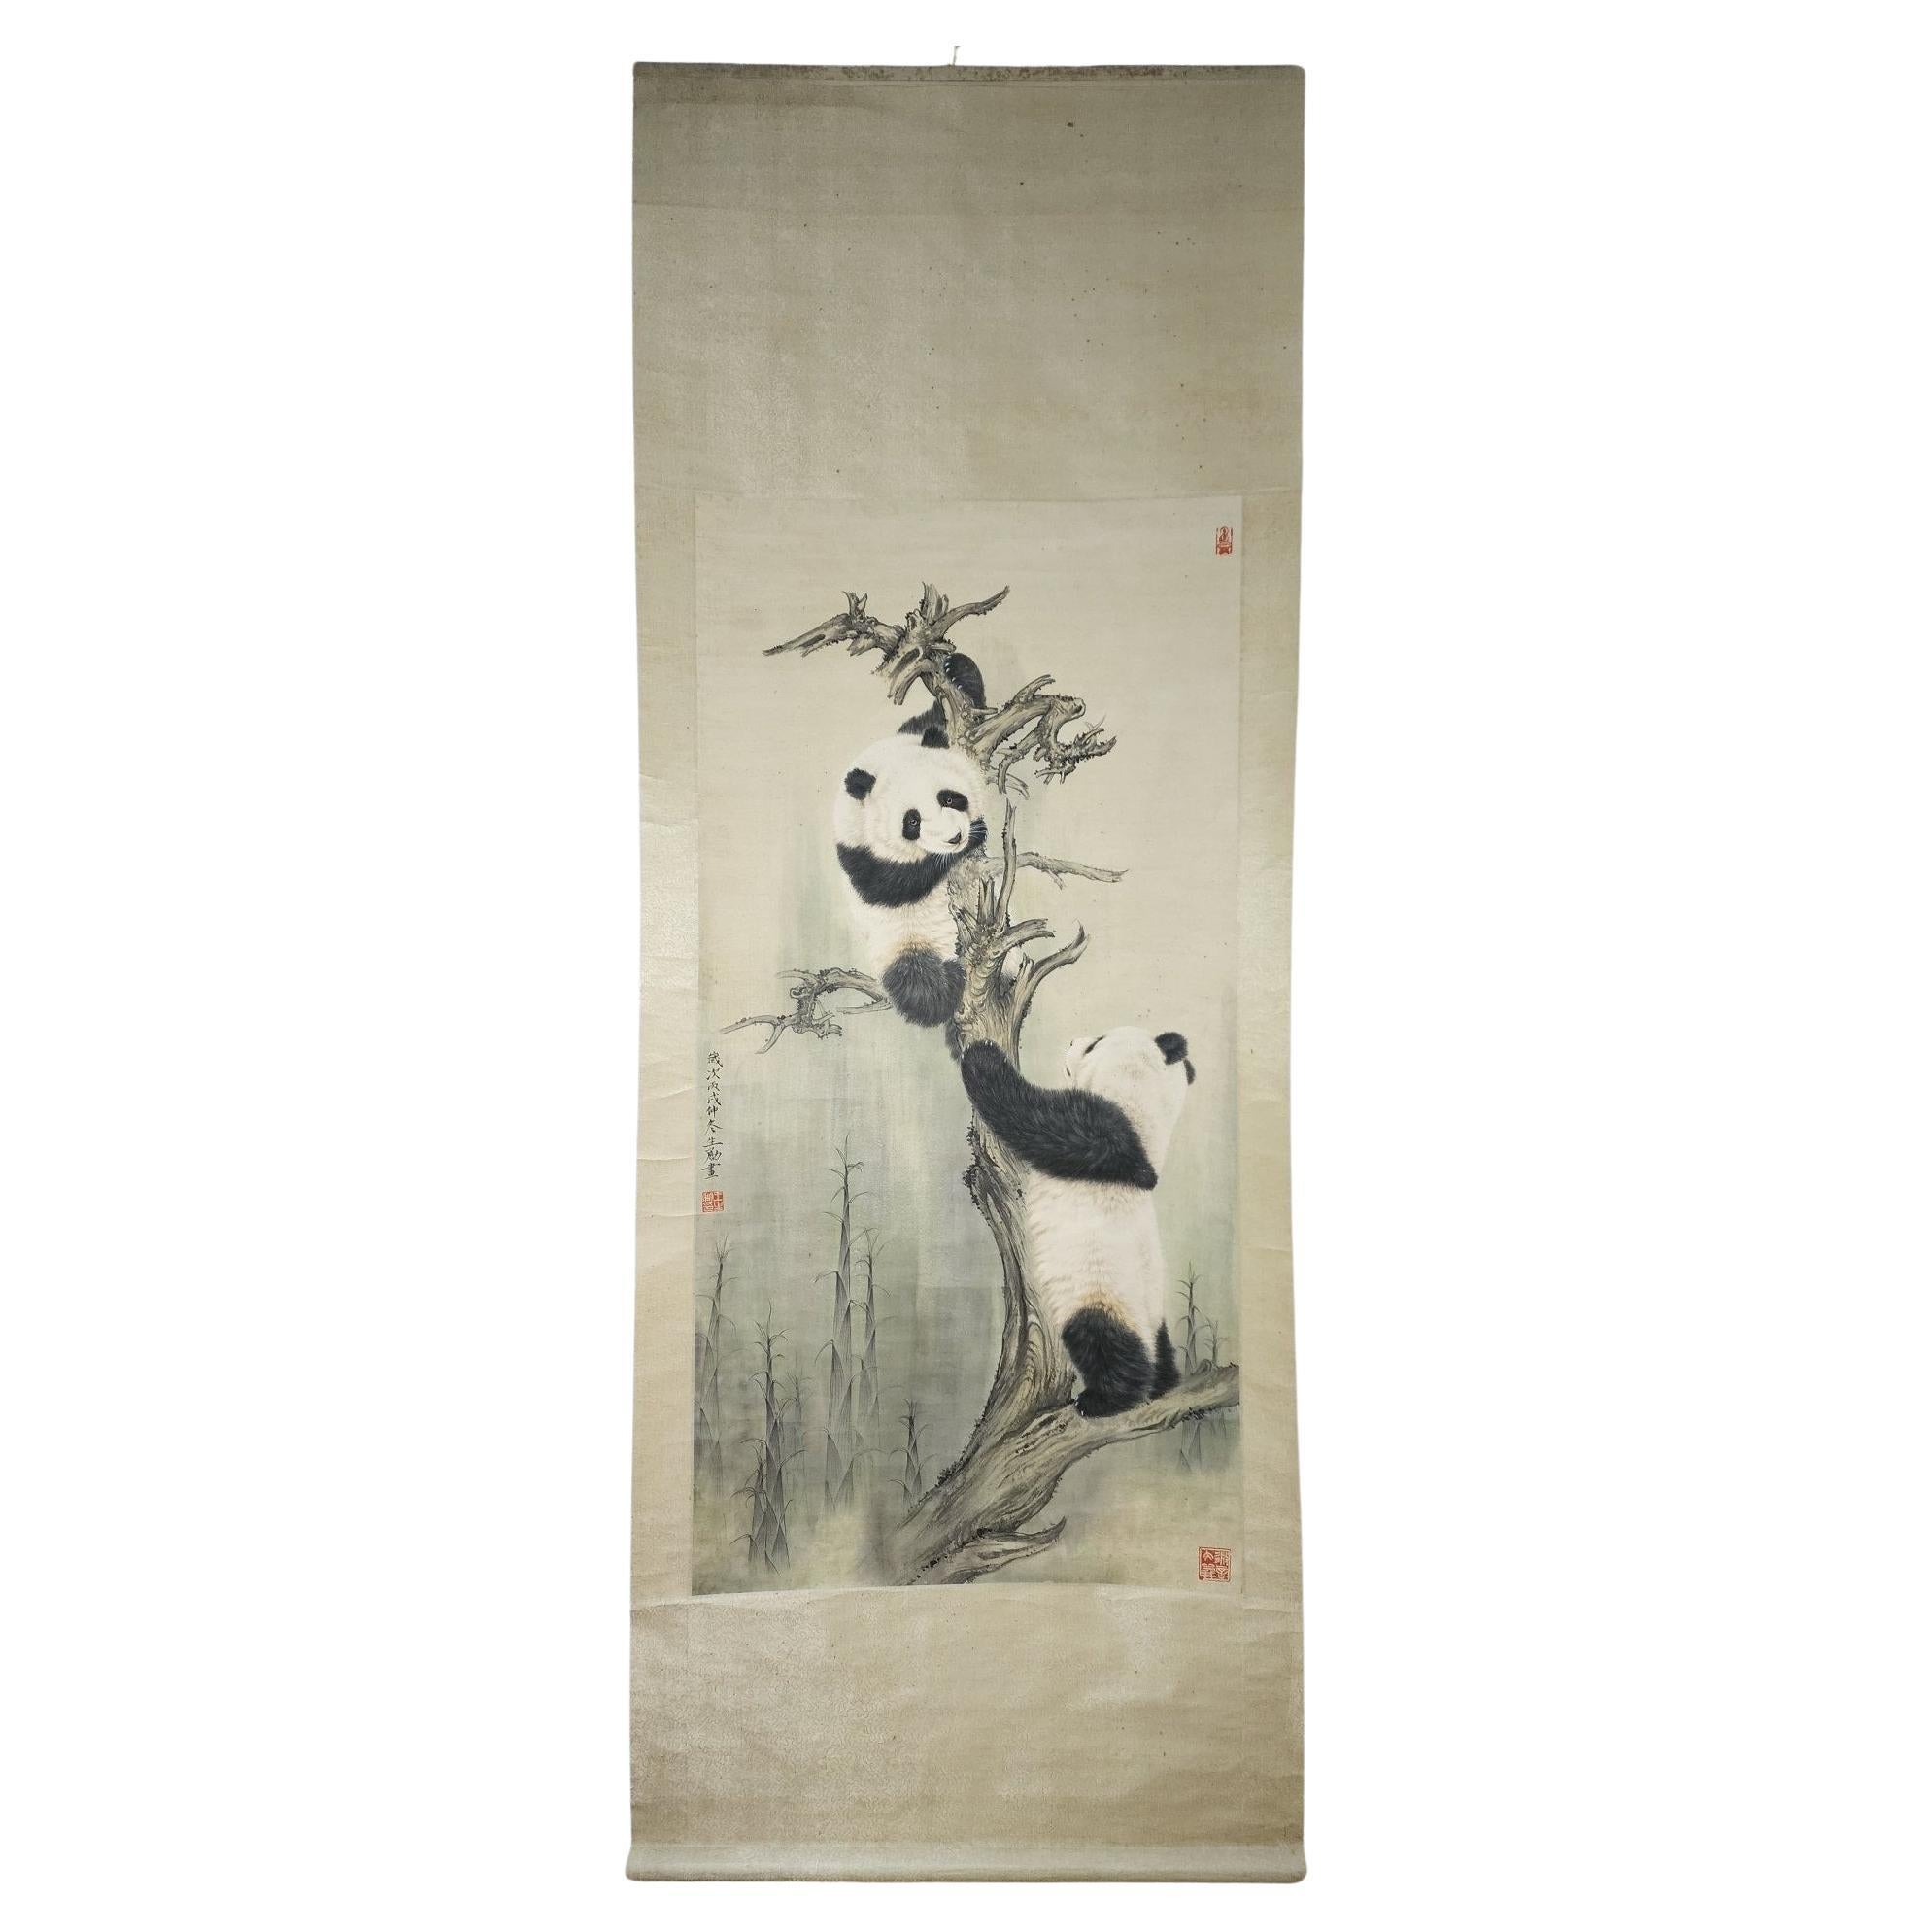 Handgemälde zweier kletternder Pandas des berühmten chinesischen Künstlers Wang Shengyong 